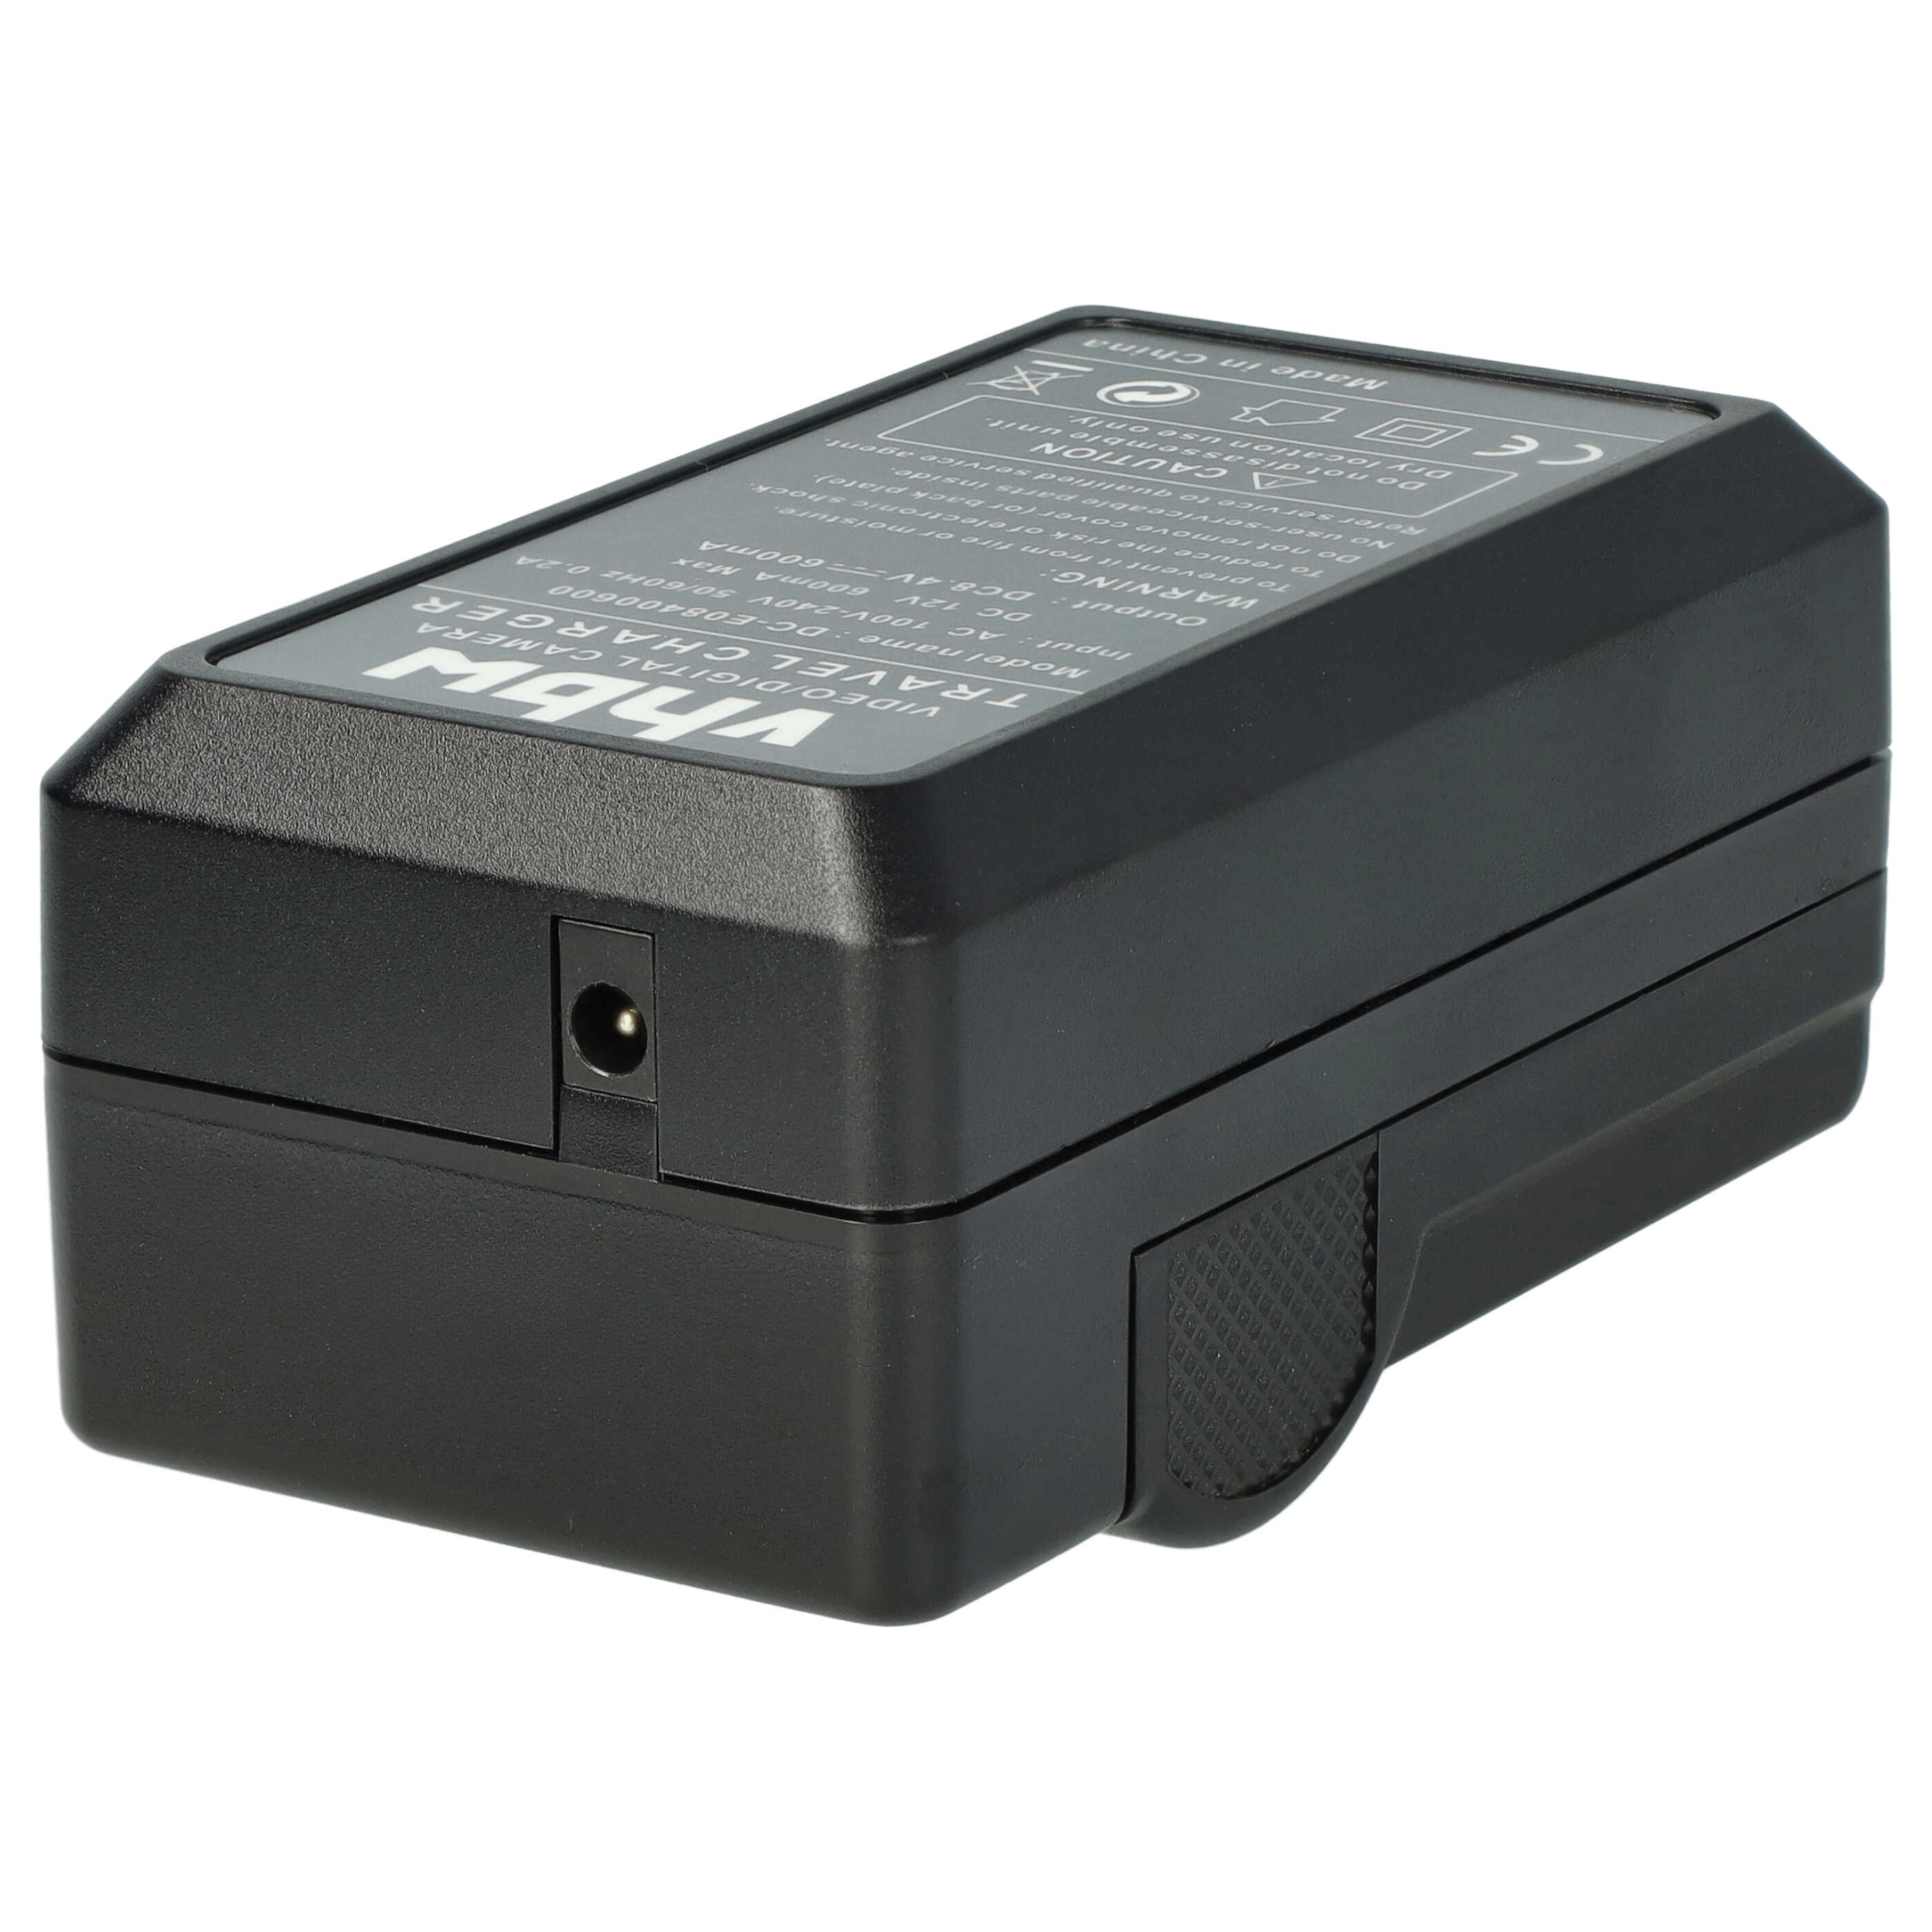 Ładowarka do aparatu Lumix DMC-GF1 i innych - ładowarka akumulatora 0,6 A, 8,4 V